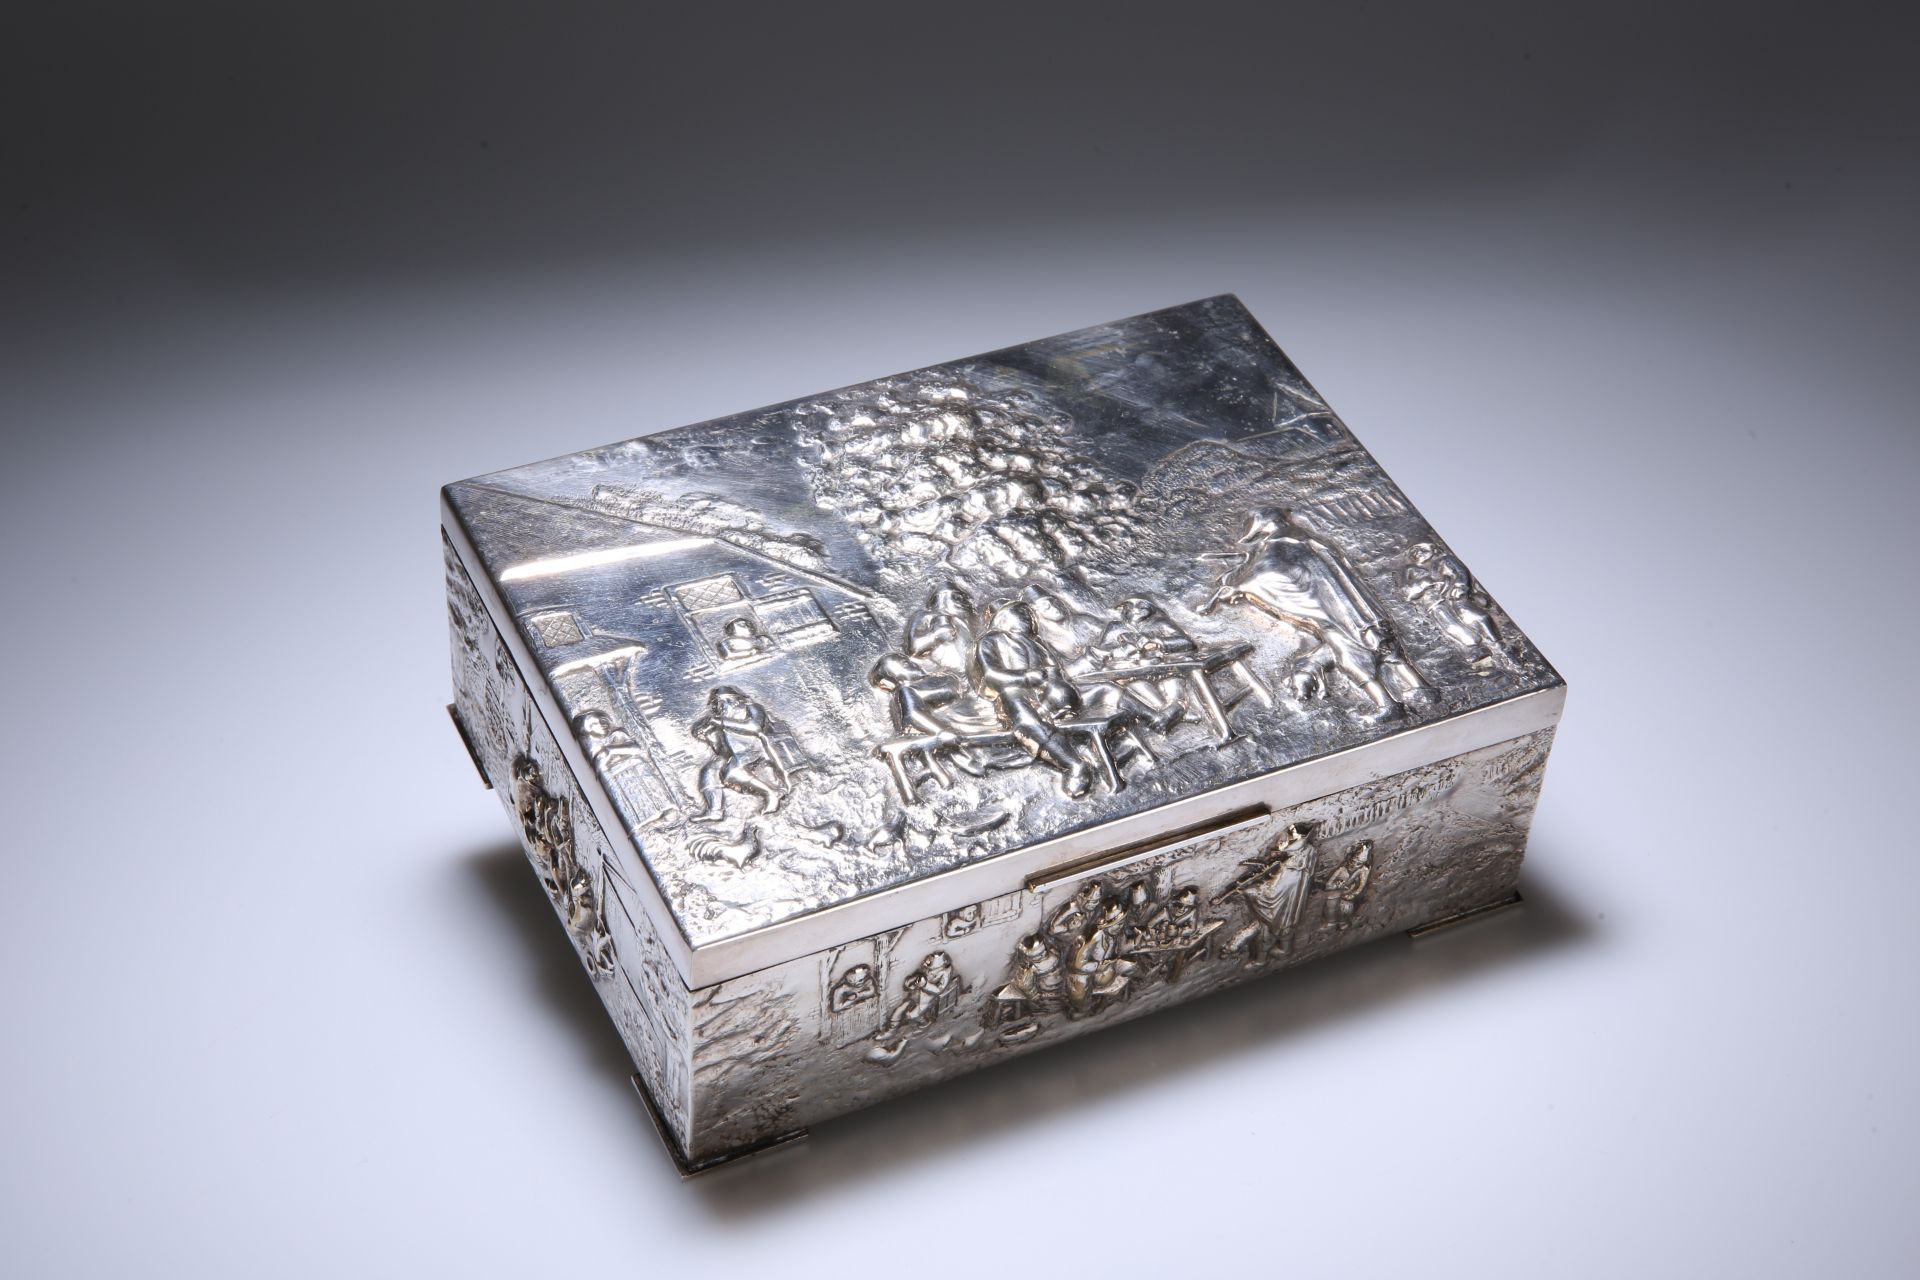 A SILVER-PLATED CIGARETTE BOX, c. 1900